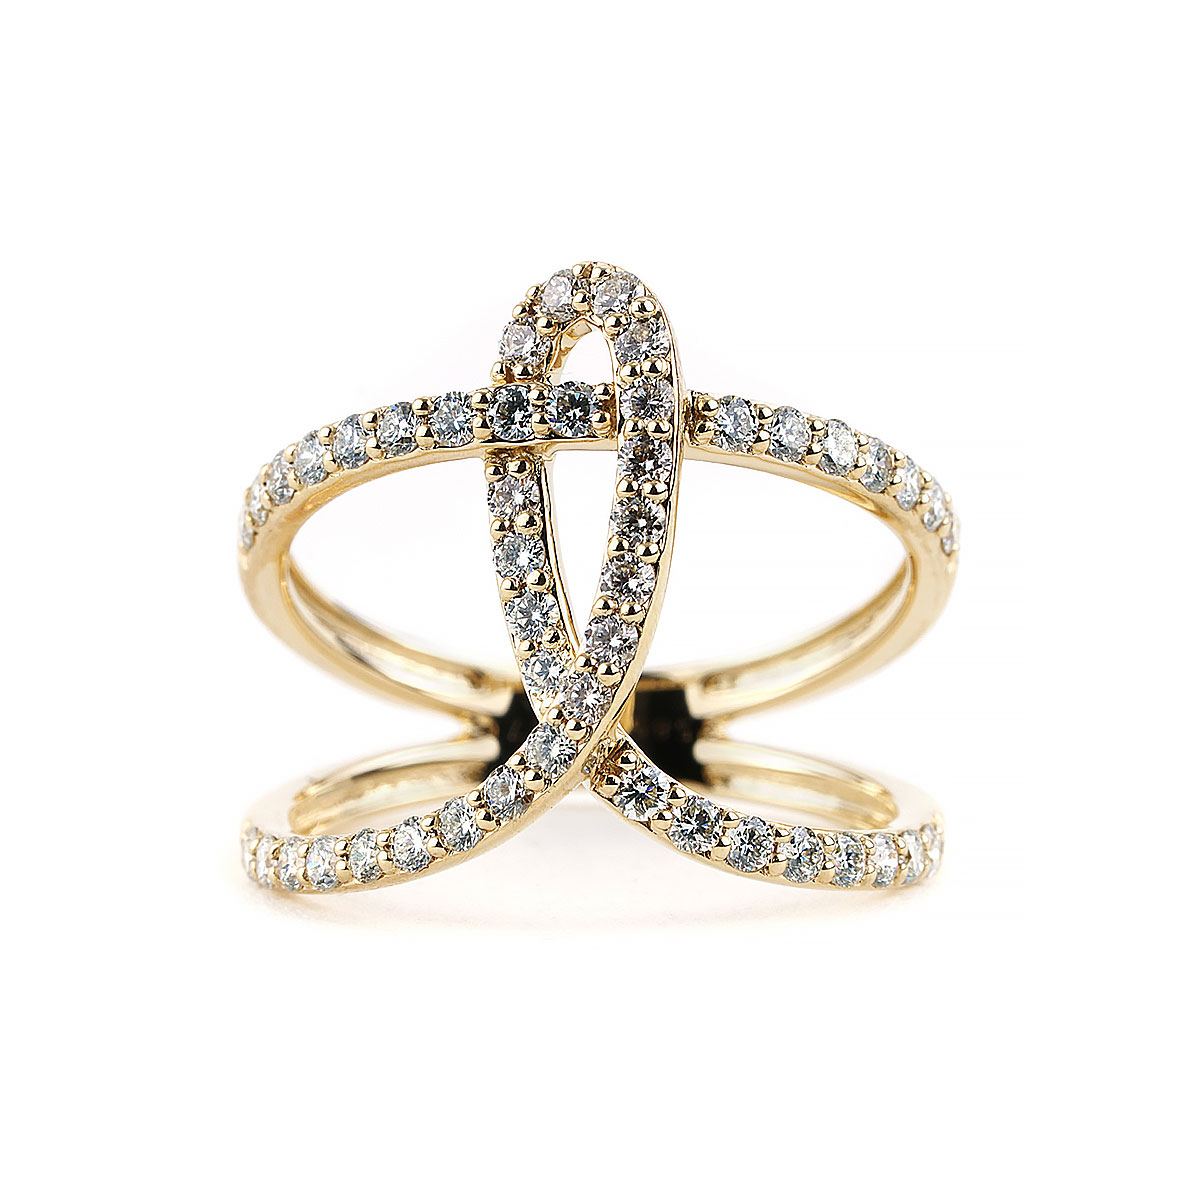 Designer Diamond Rings at J.R. Dunn Jewelers